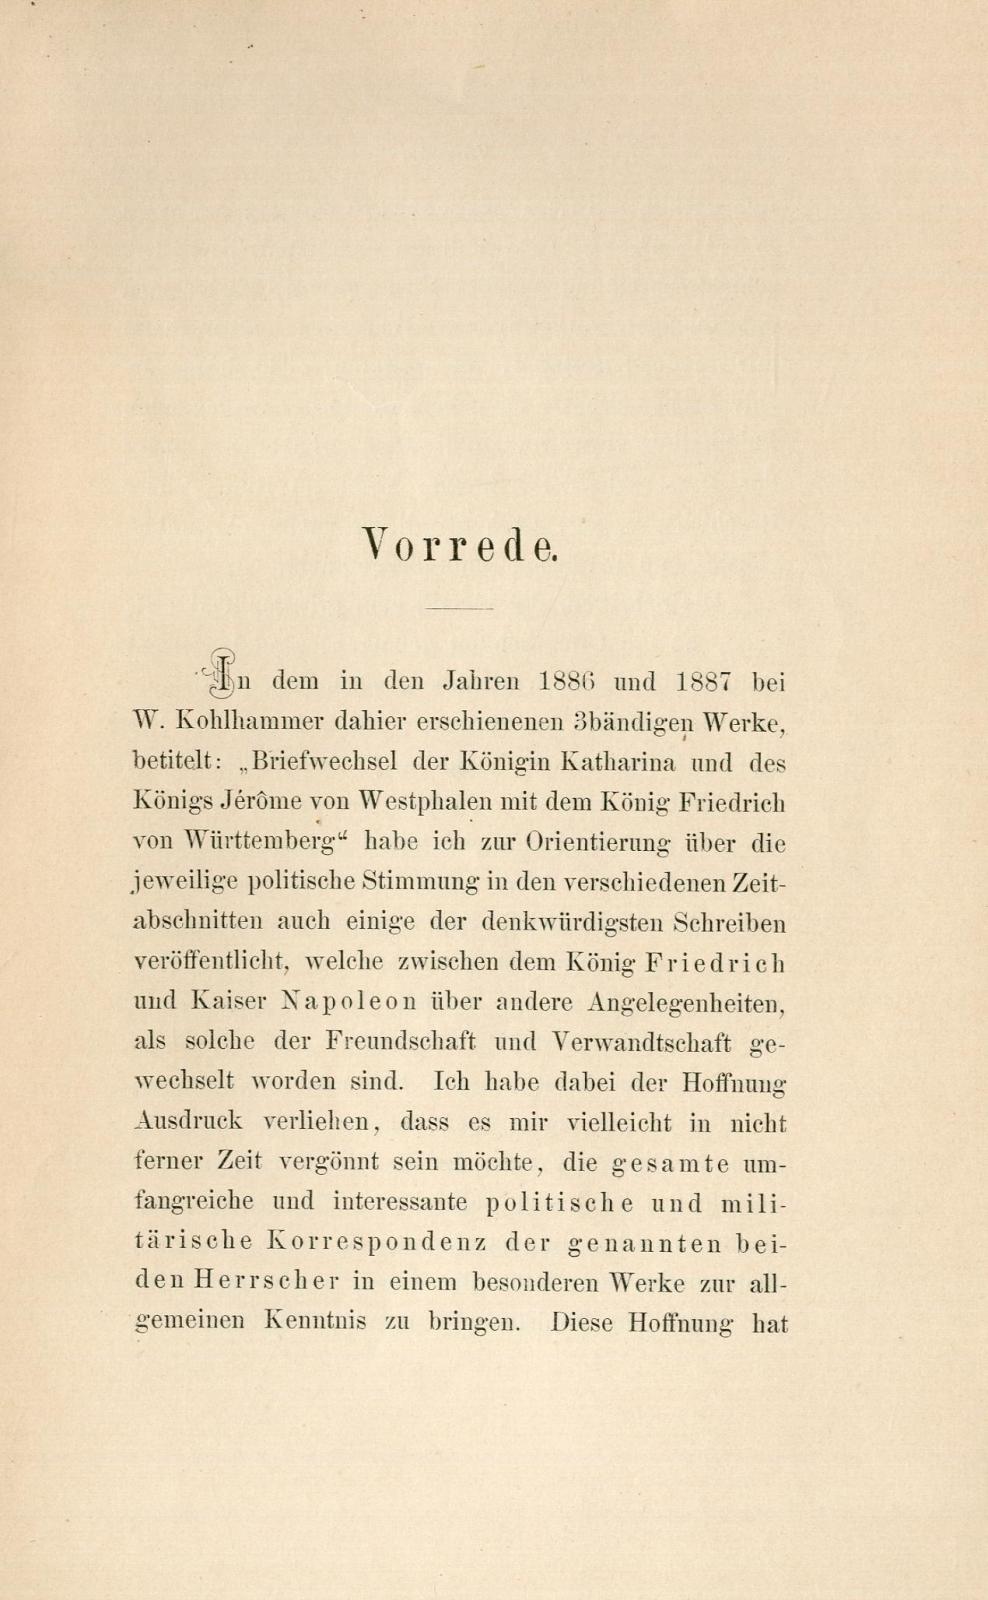 Politische und militärische Correspondenz Köing Friedrichs von Württemberg mit Kaiser Napoleon I : 1805-1813 / hrsg. von August von Schlossberger